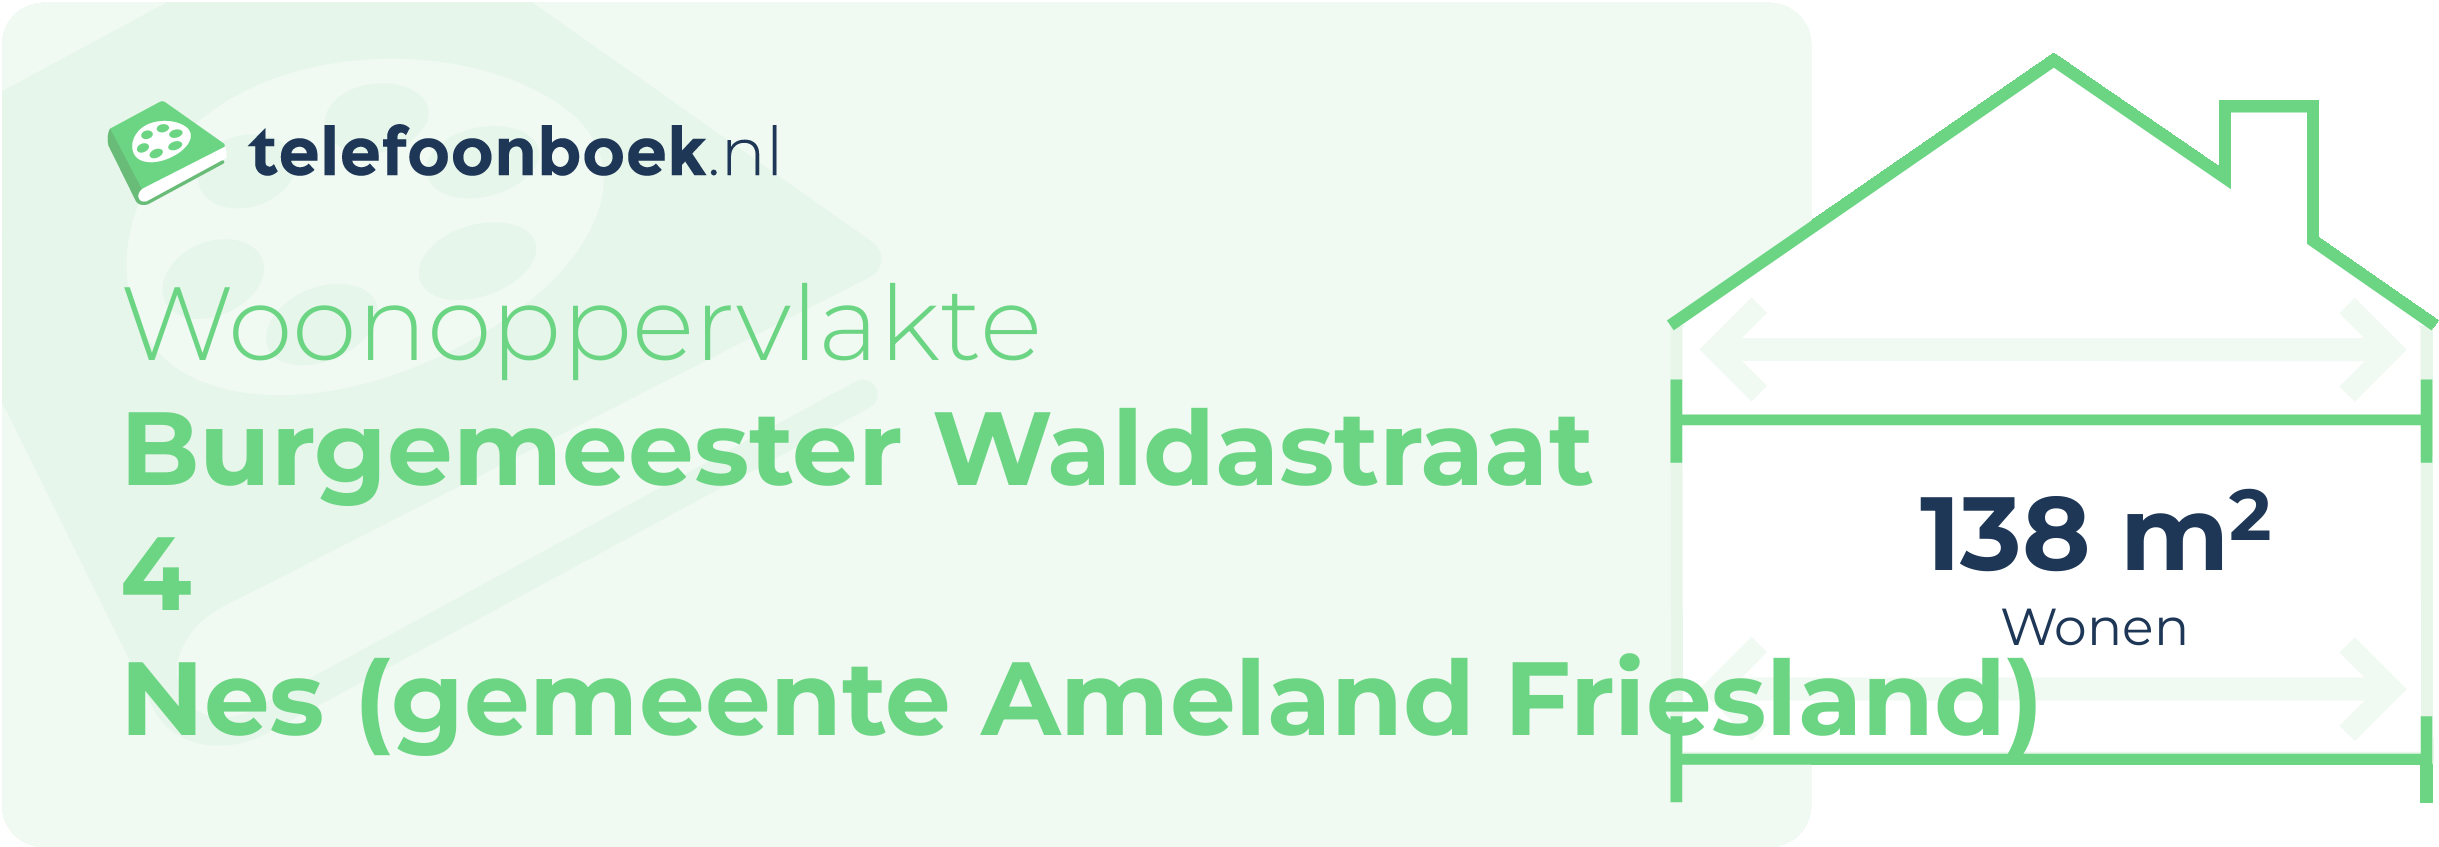 Woonoppervlakte Burgemeester Waldastraat 4 Nes (gemeente Ameland Friesland)